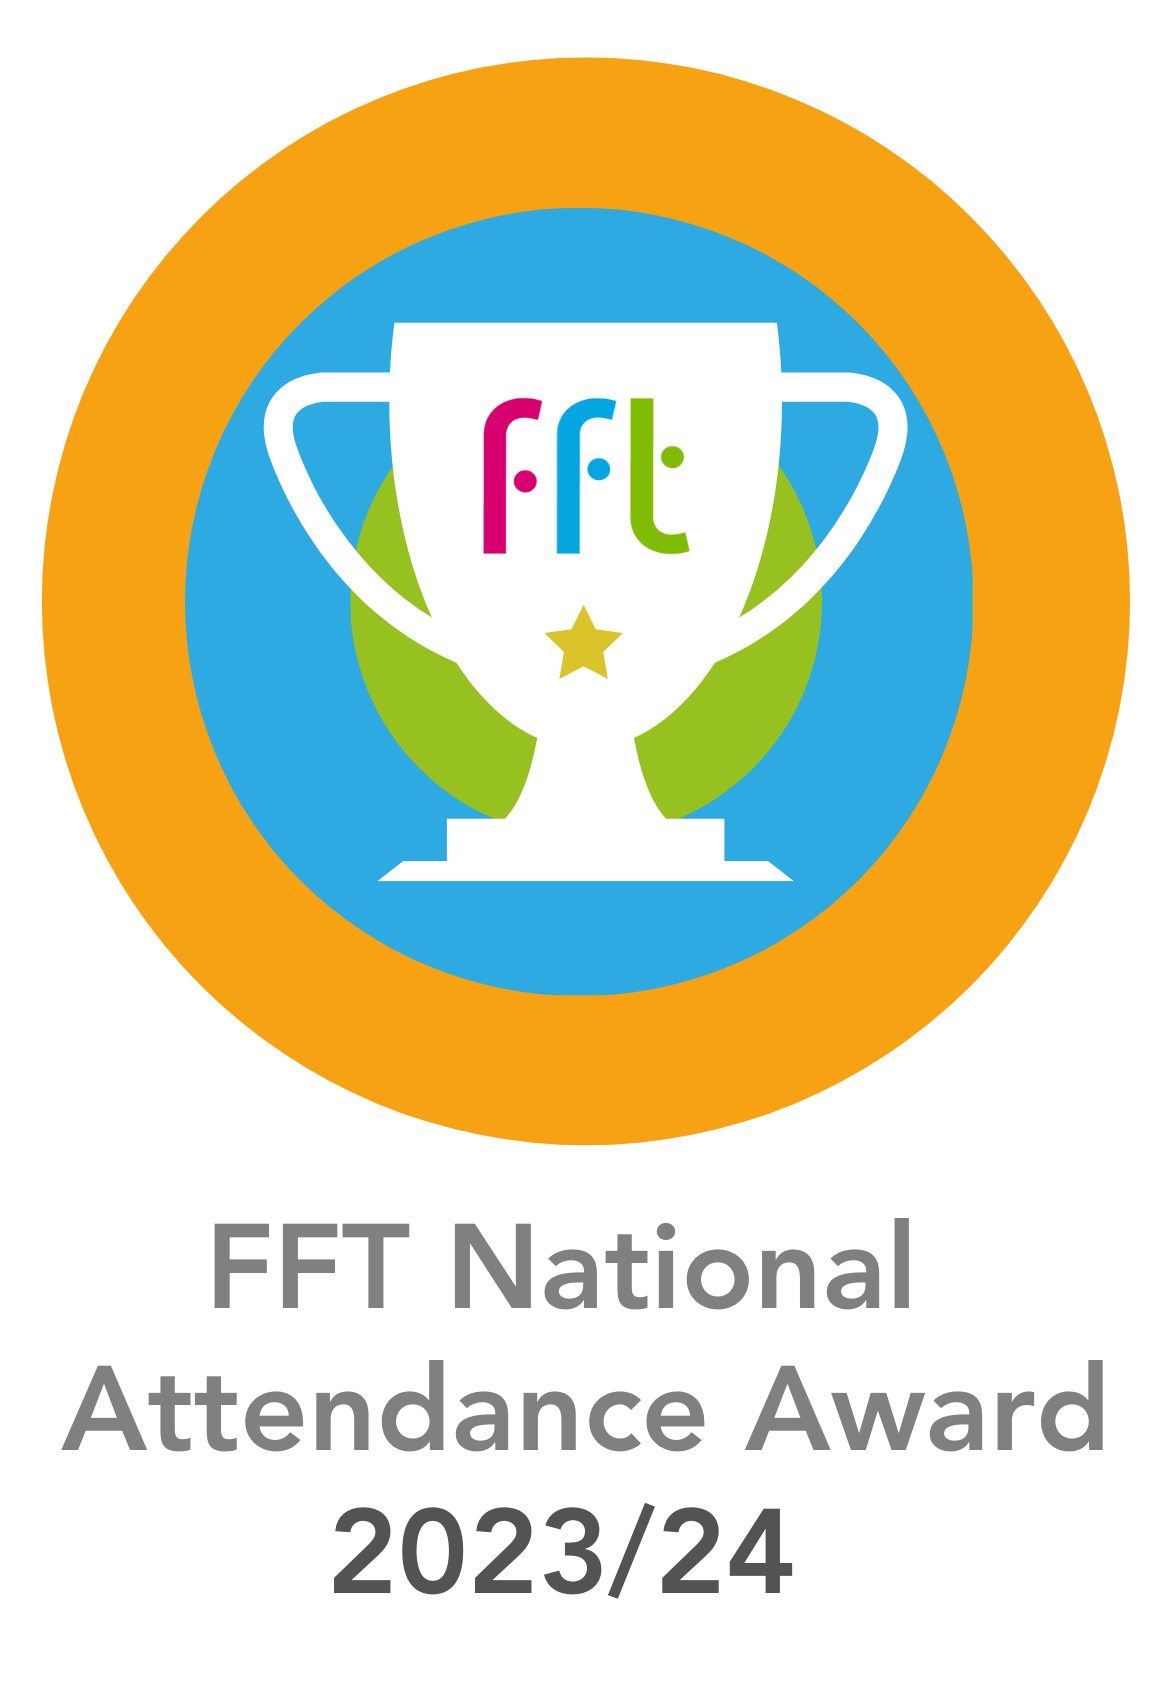 FFT National Attendance Award website Logo 